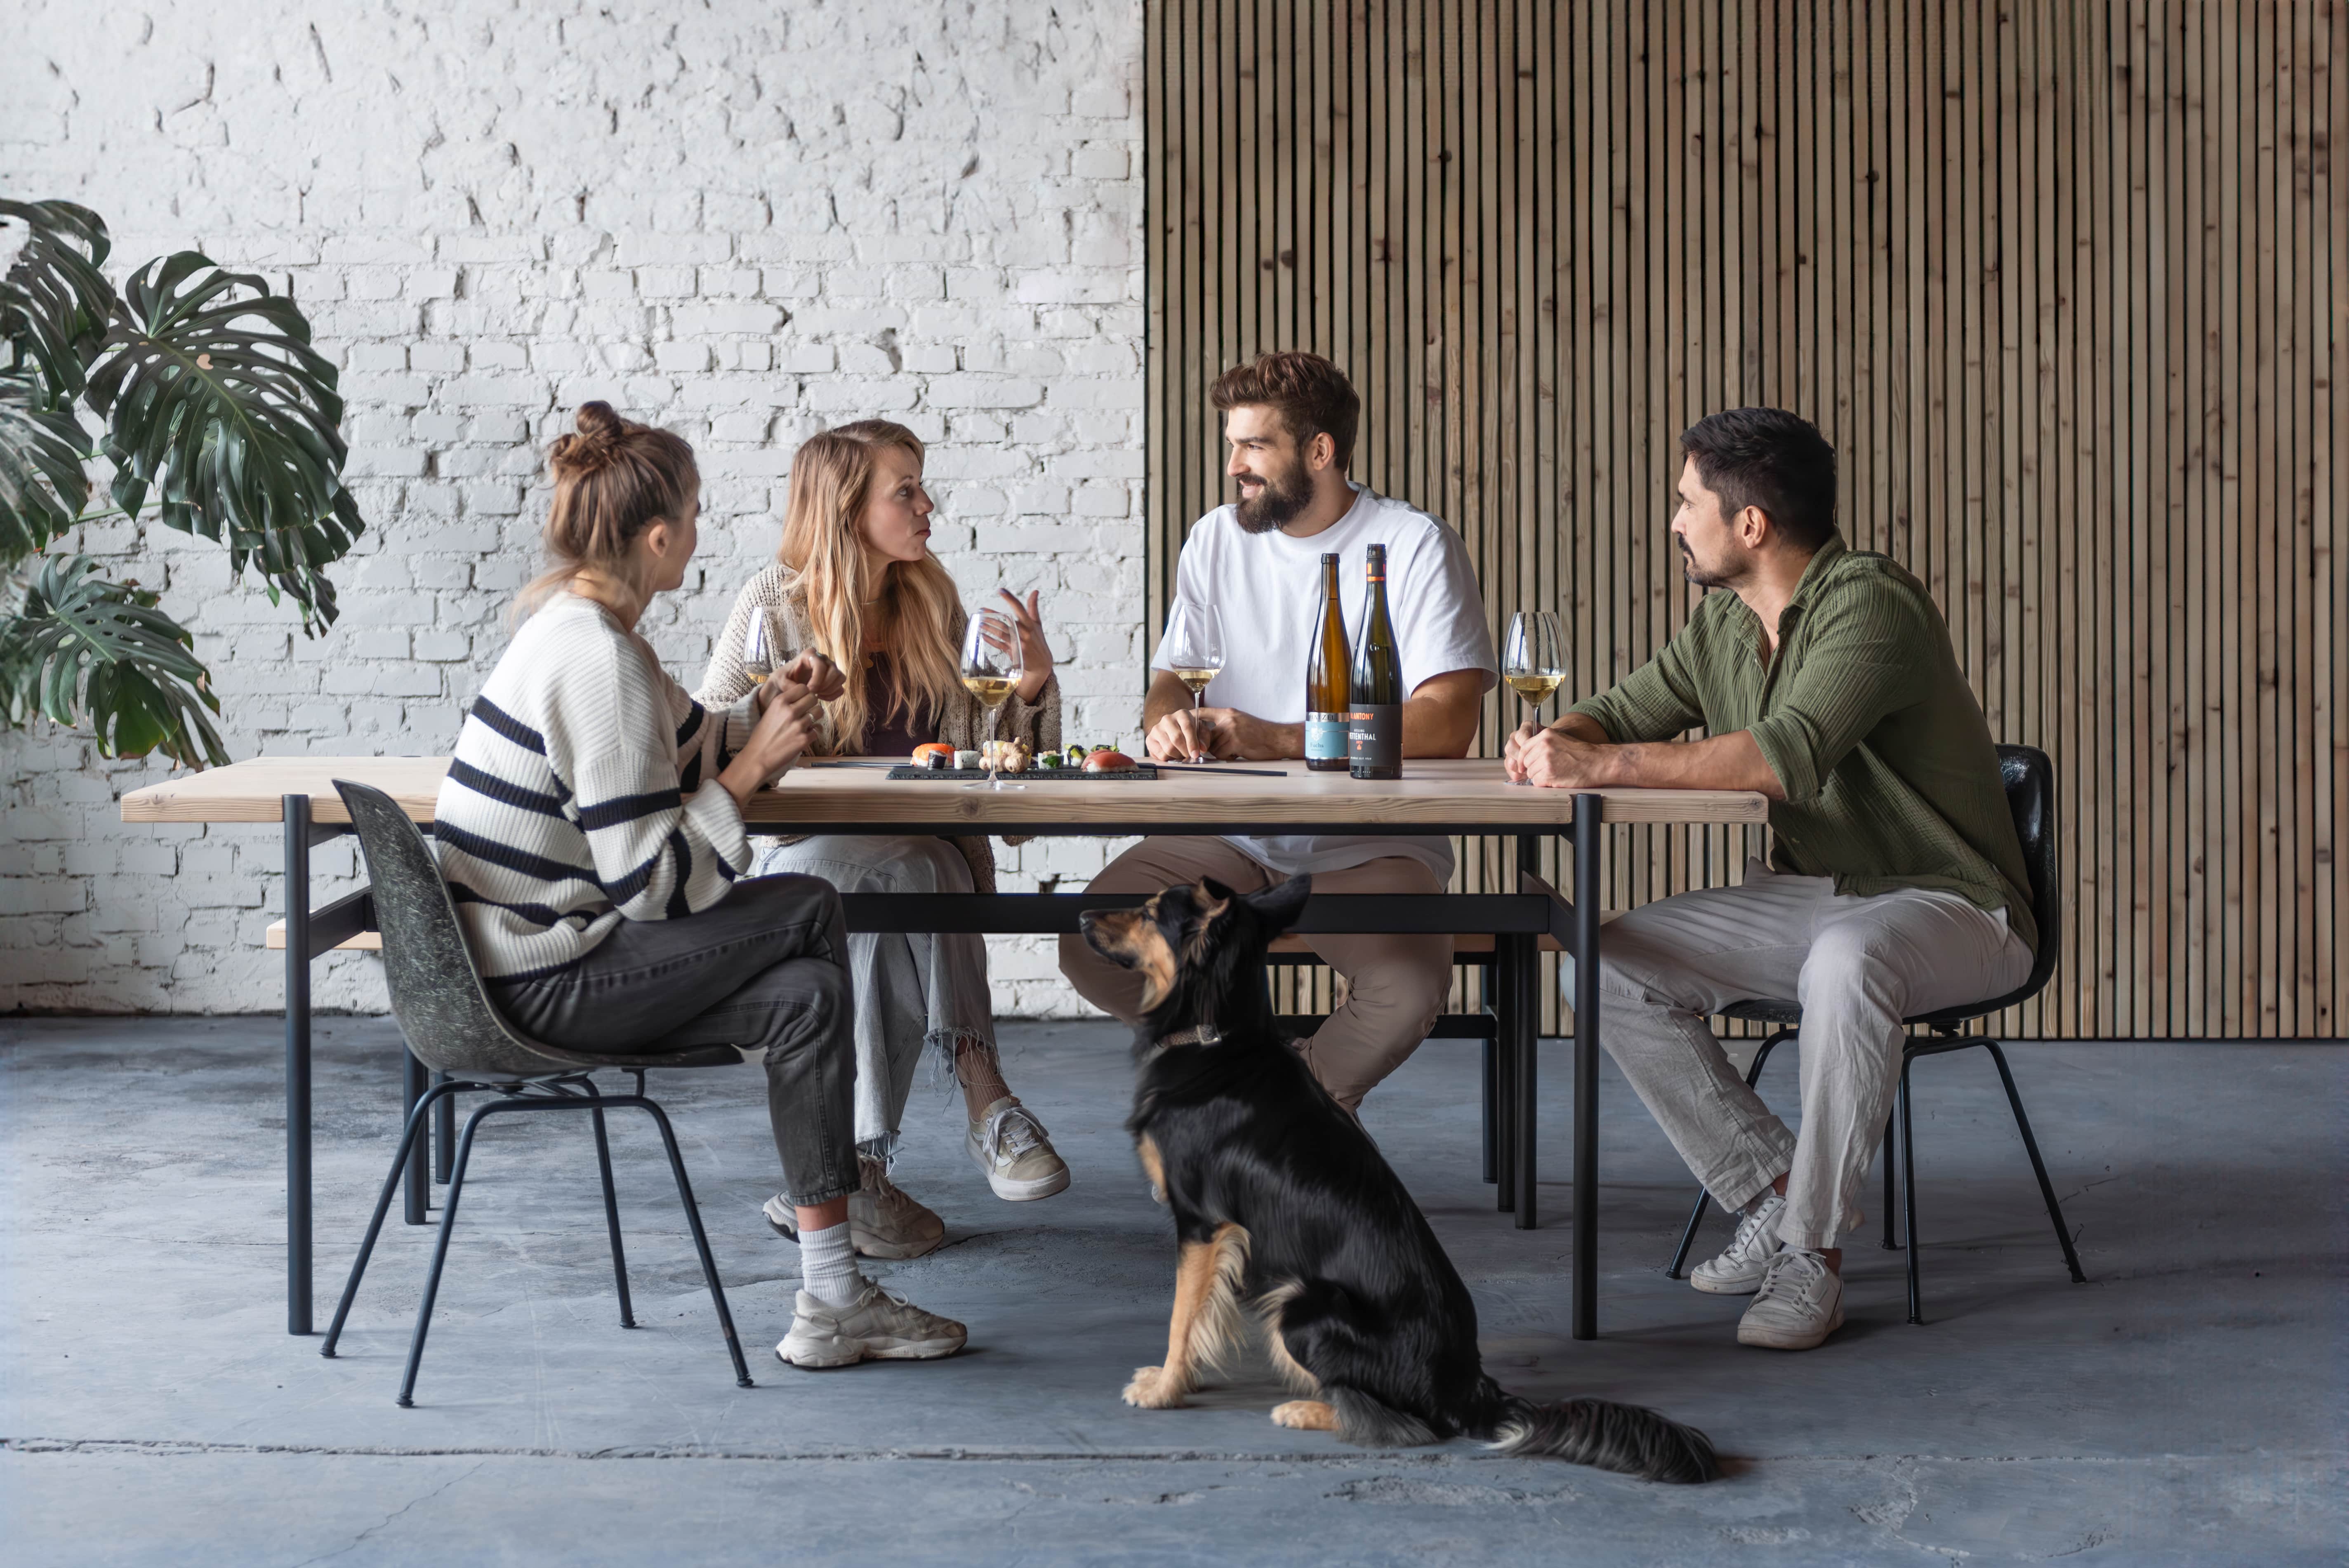 Vier Personen sitzen gemeinsam am Tisch, trinken Wein und unterhalten sich. Bei dem Tisch und der Sitzbank handelt es sich um Altholzmöbel aus Gerüstbohlen.